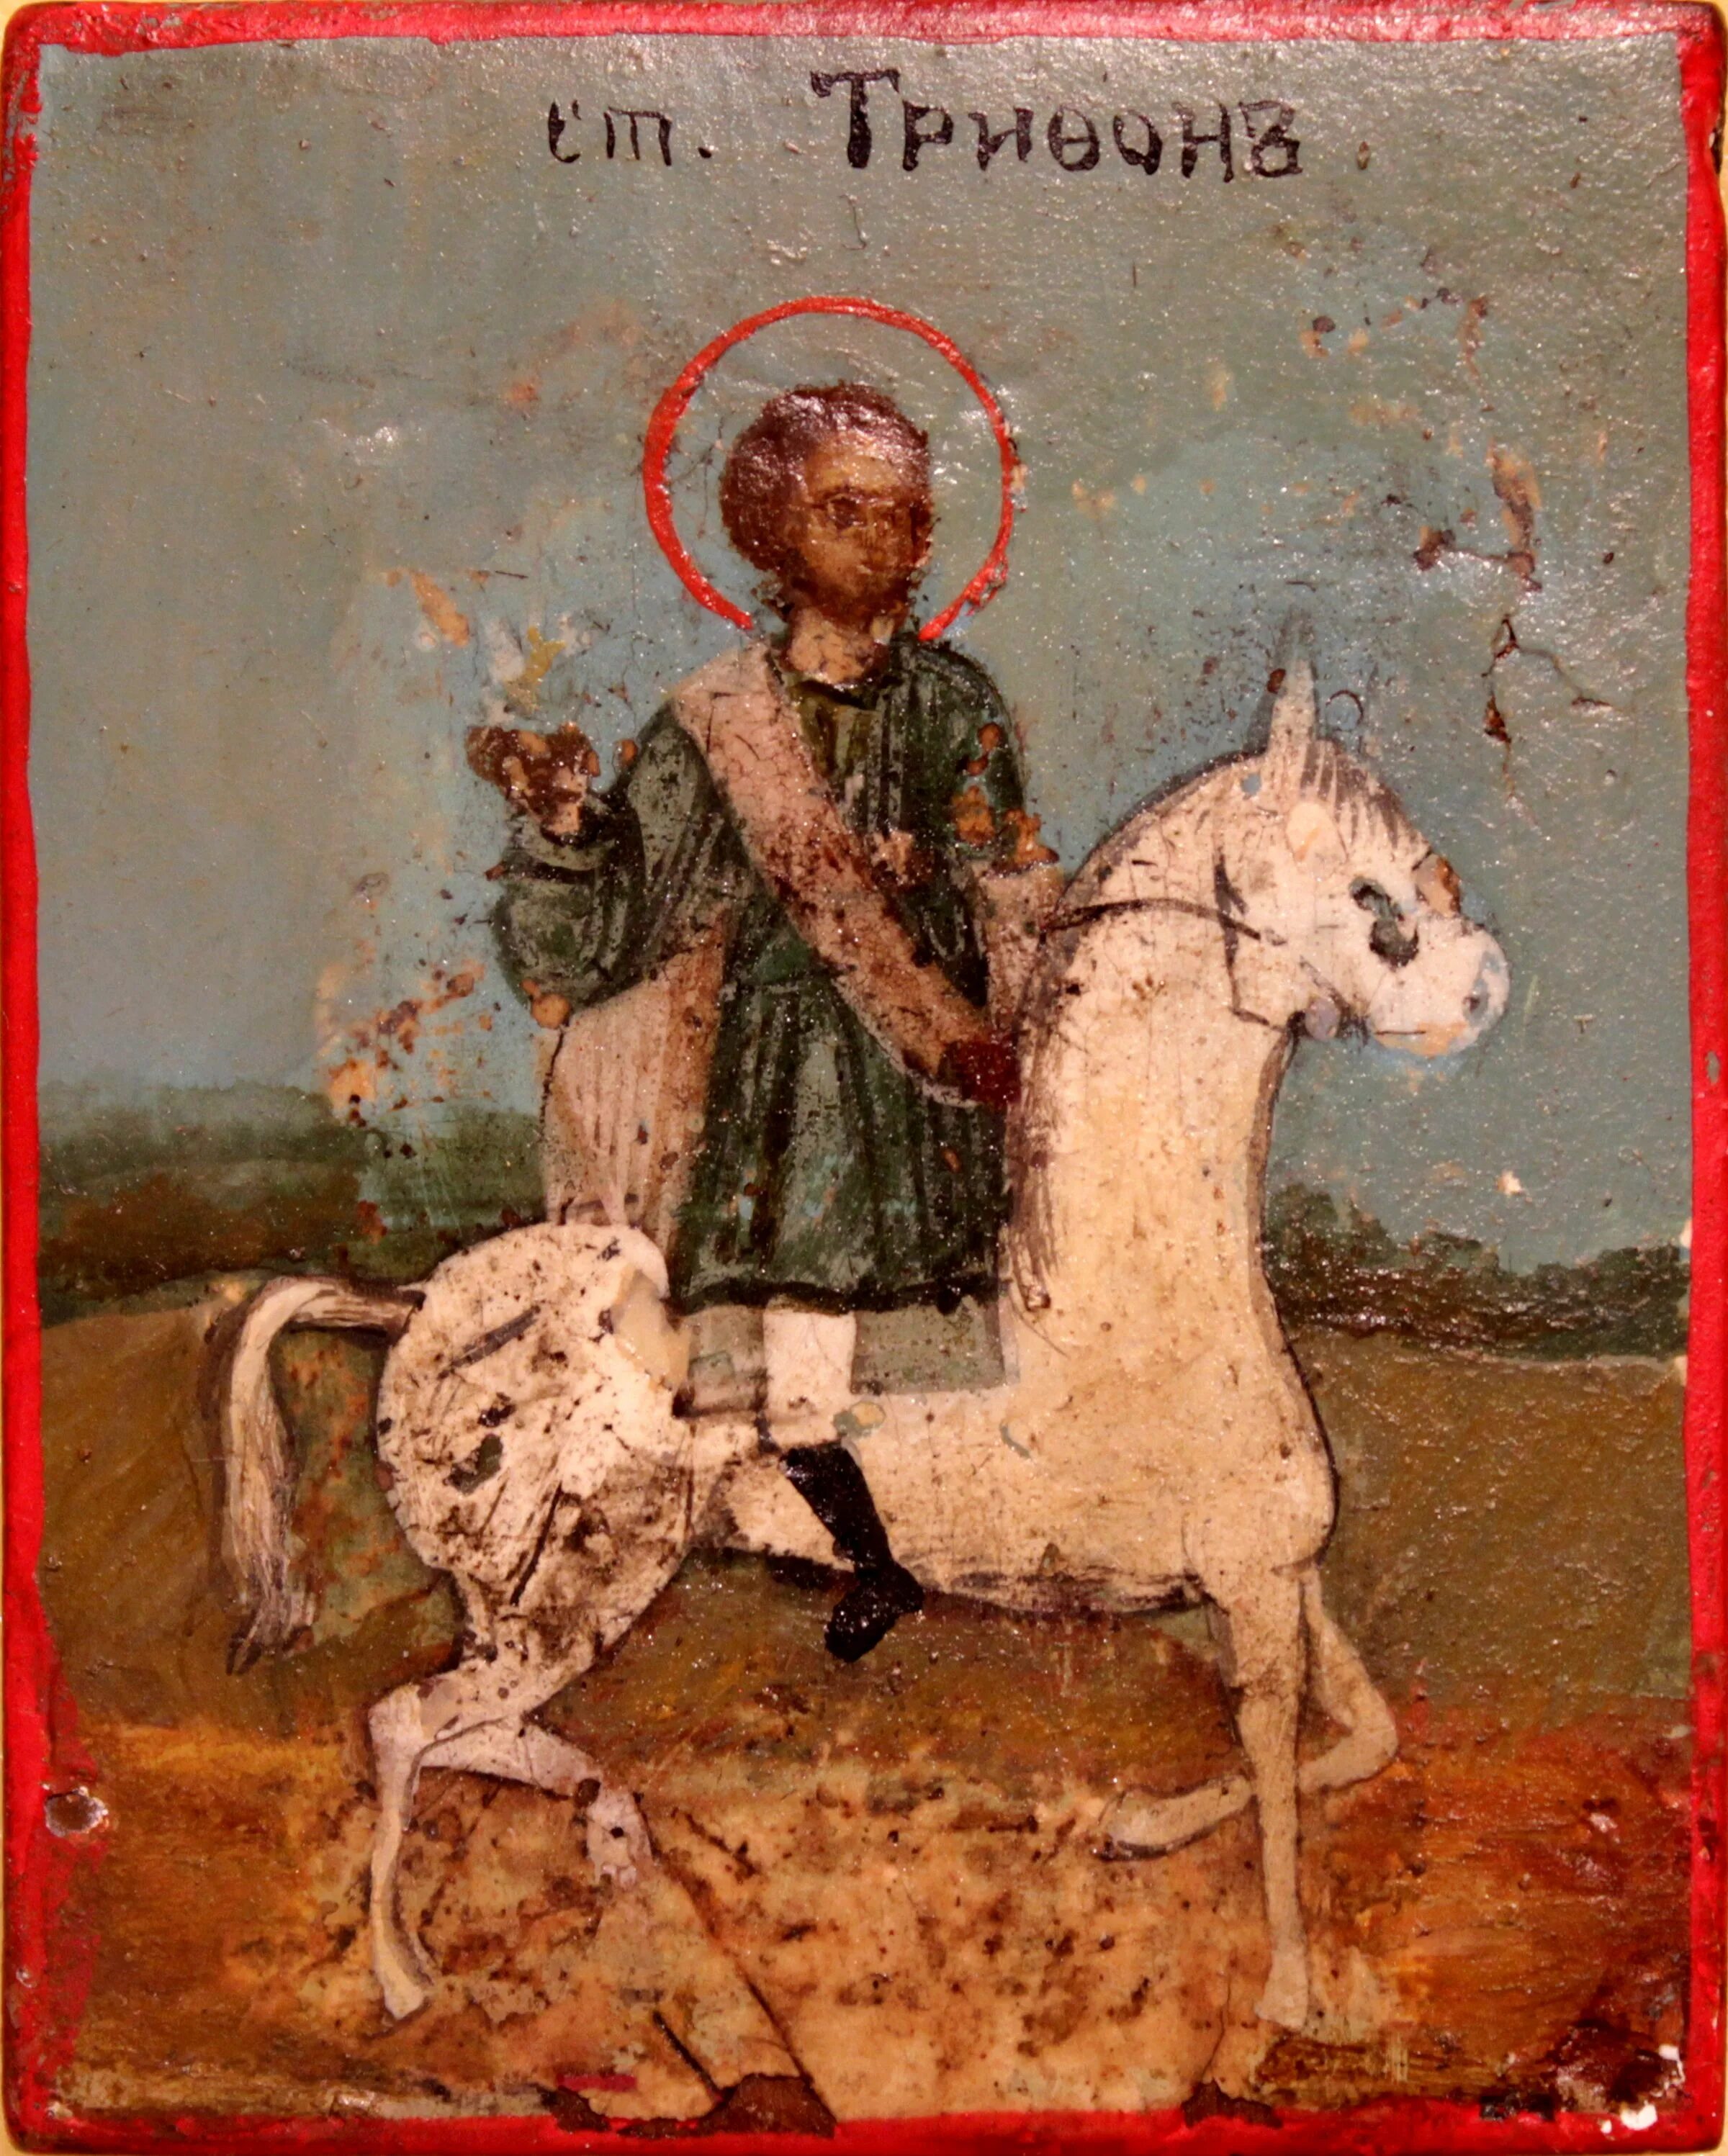 Икона Святого Трифона покровителя охотников. День святого трифона 14 февраля картинки